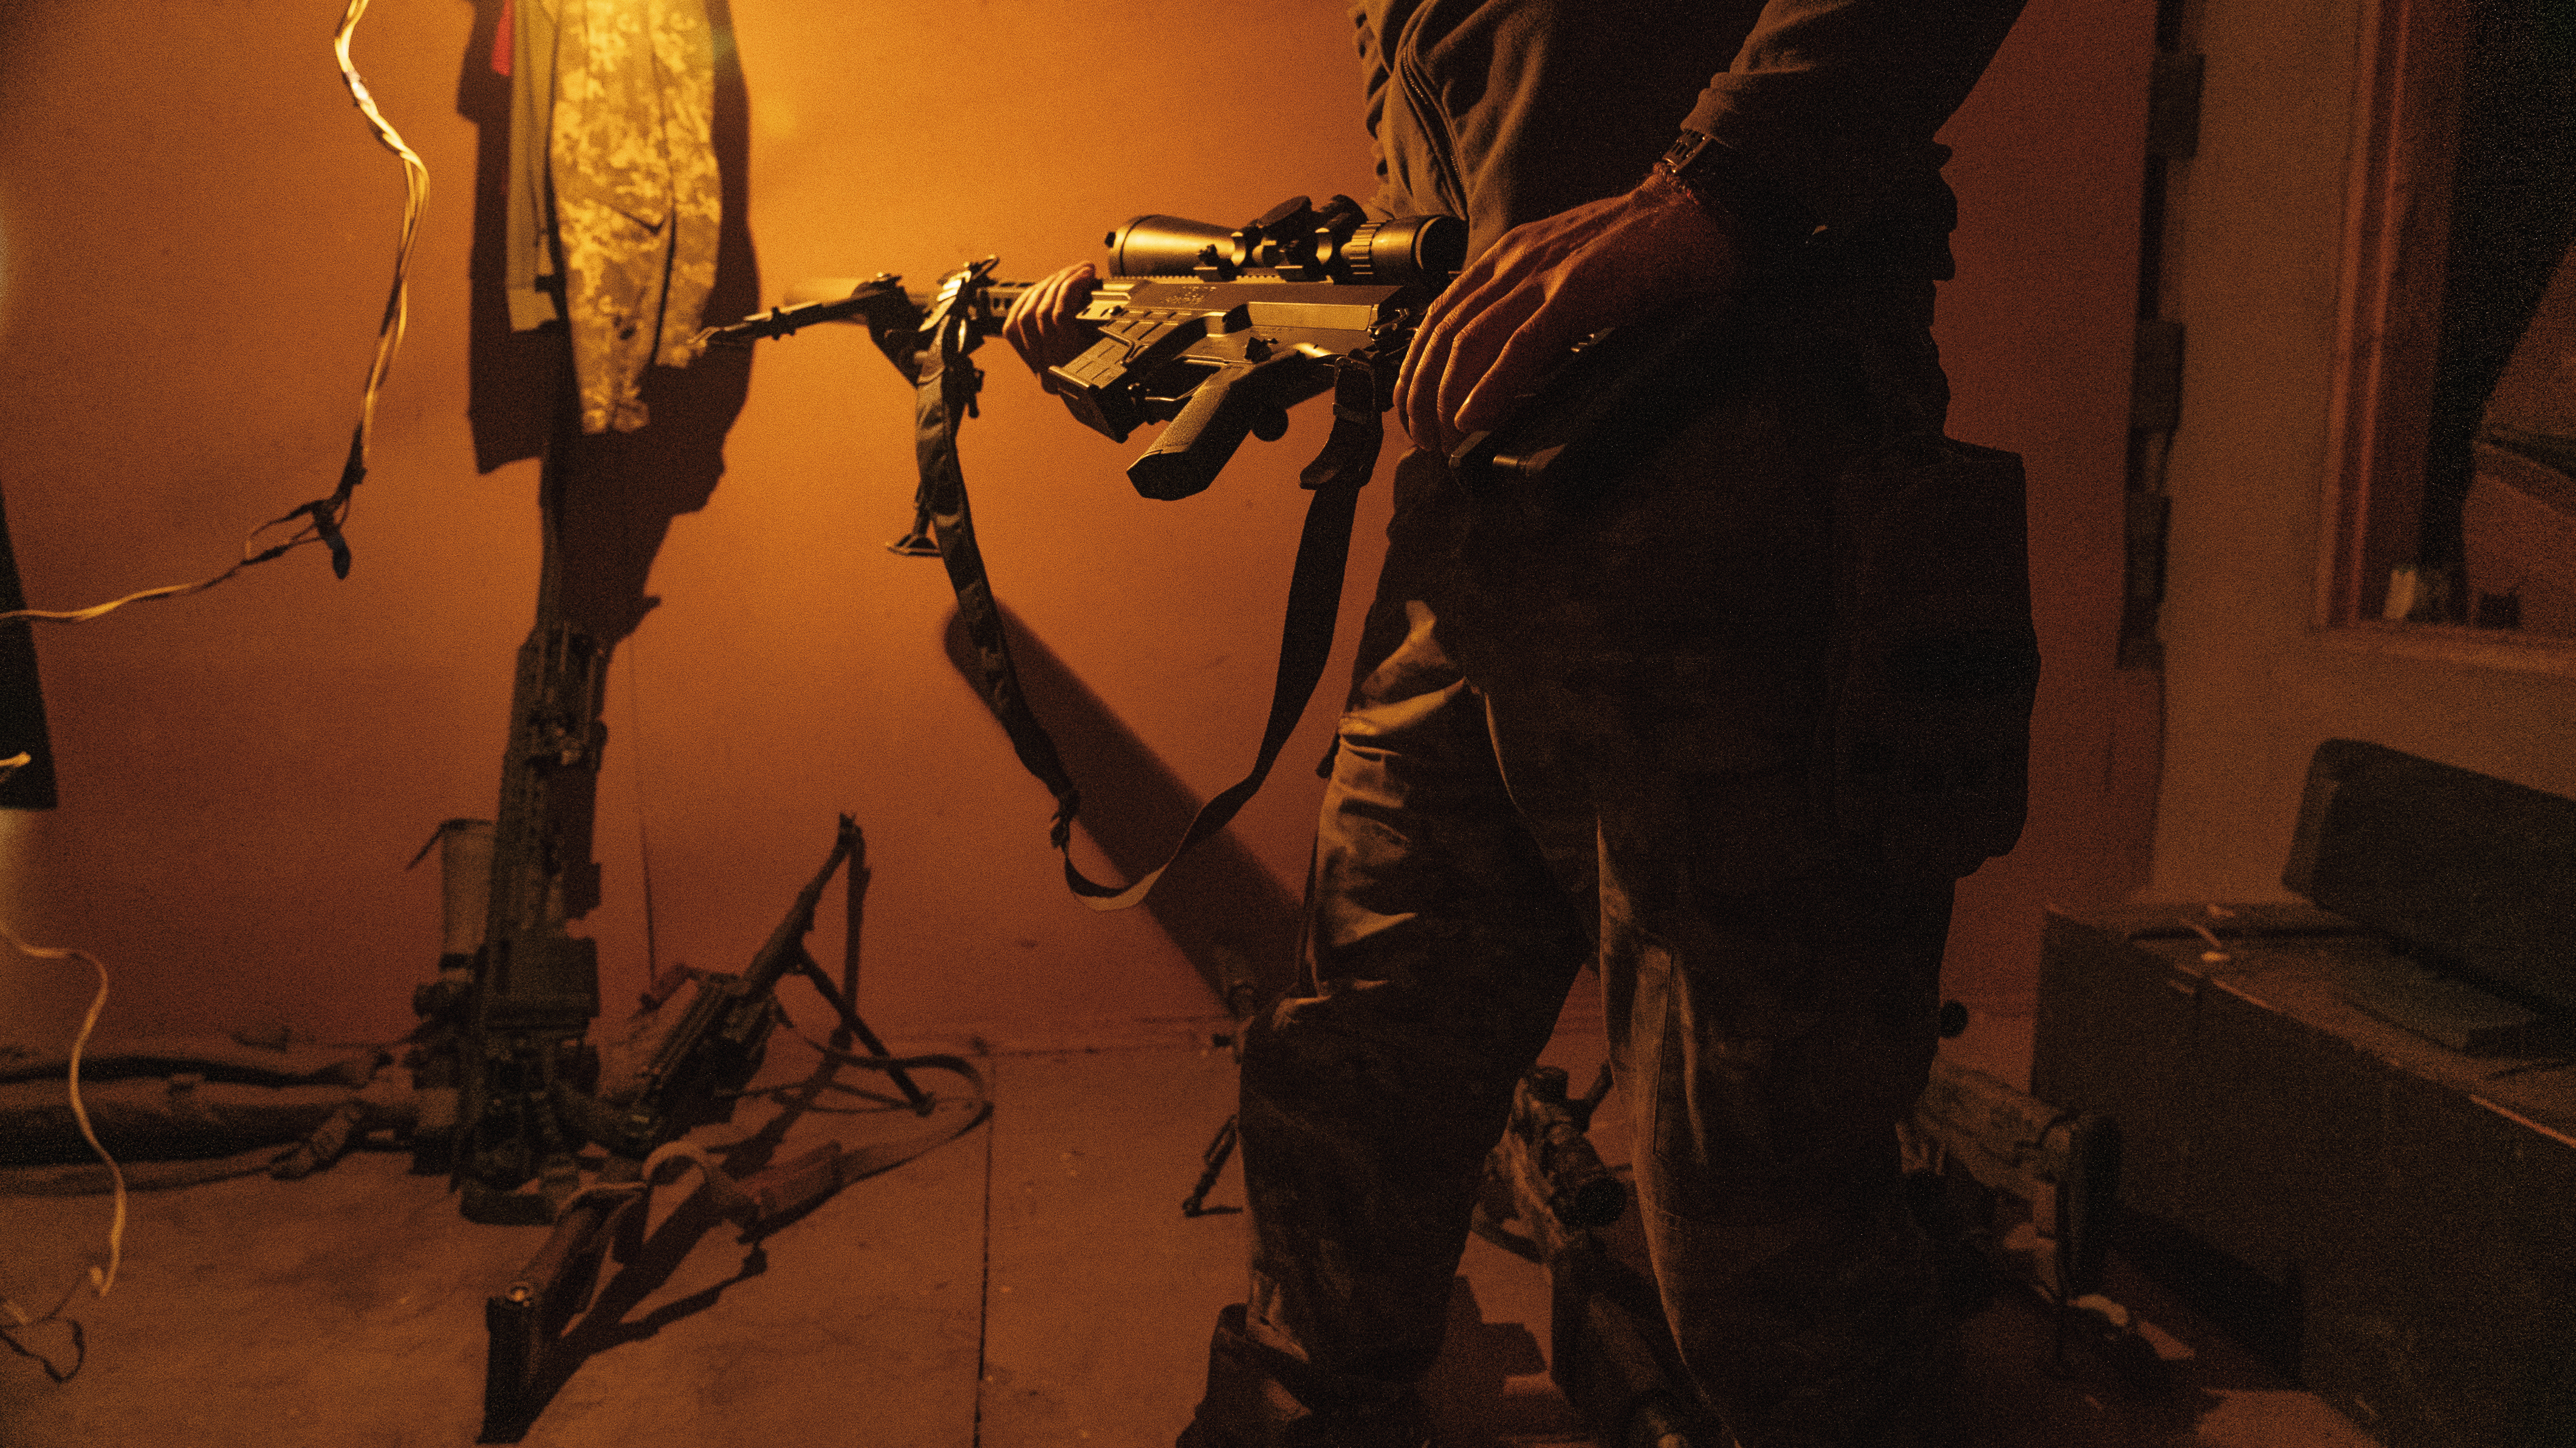 一名狙擊手沐浴在房間的橘色燈光裡，自信地從軍械庫中選出一把威力強大的步槍，他會在即將執行的任務中使用這把武器。